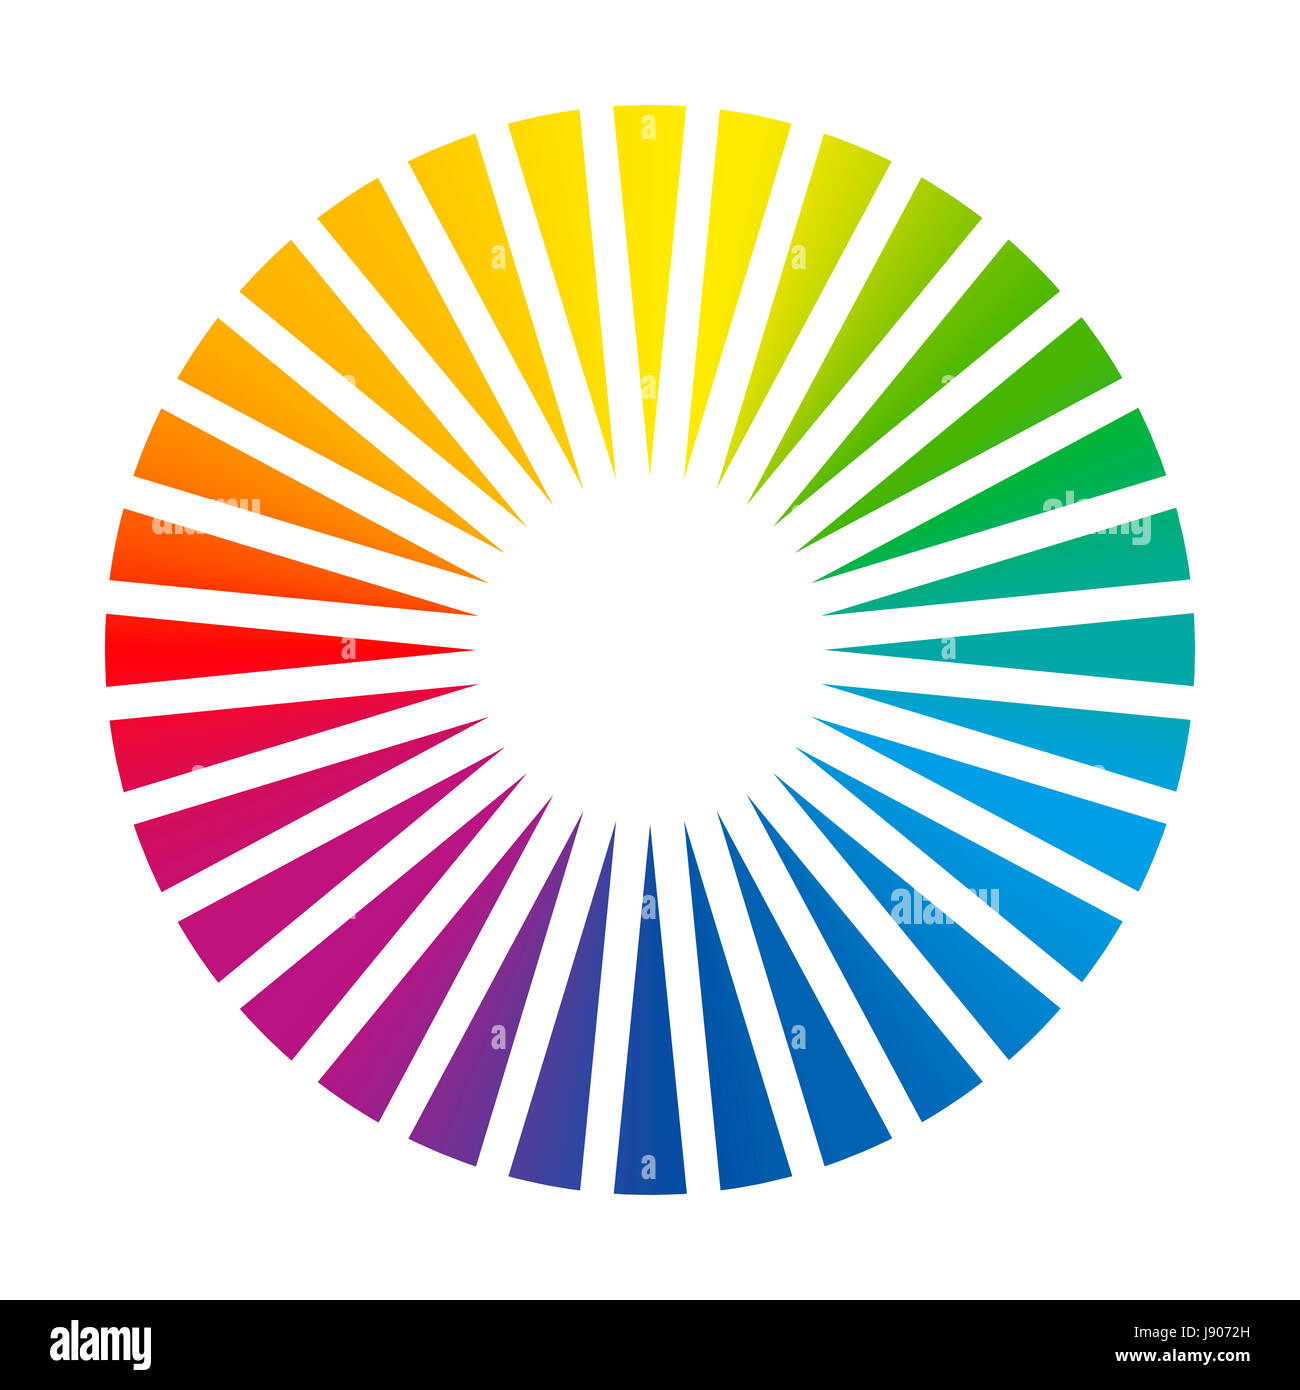 Farbkreis - Runde Farbe Farbfächer mit 32 verschiedenen farbigen Dreiecke, die dazu führen, einen brillanten weiße leuchtende Zentrum, eine optische Täuschung dass. Stockfoto